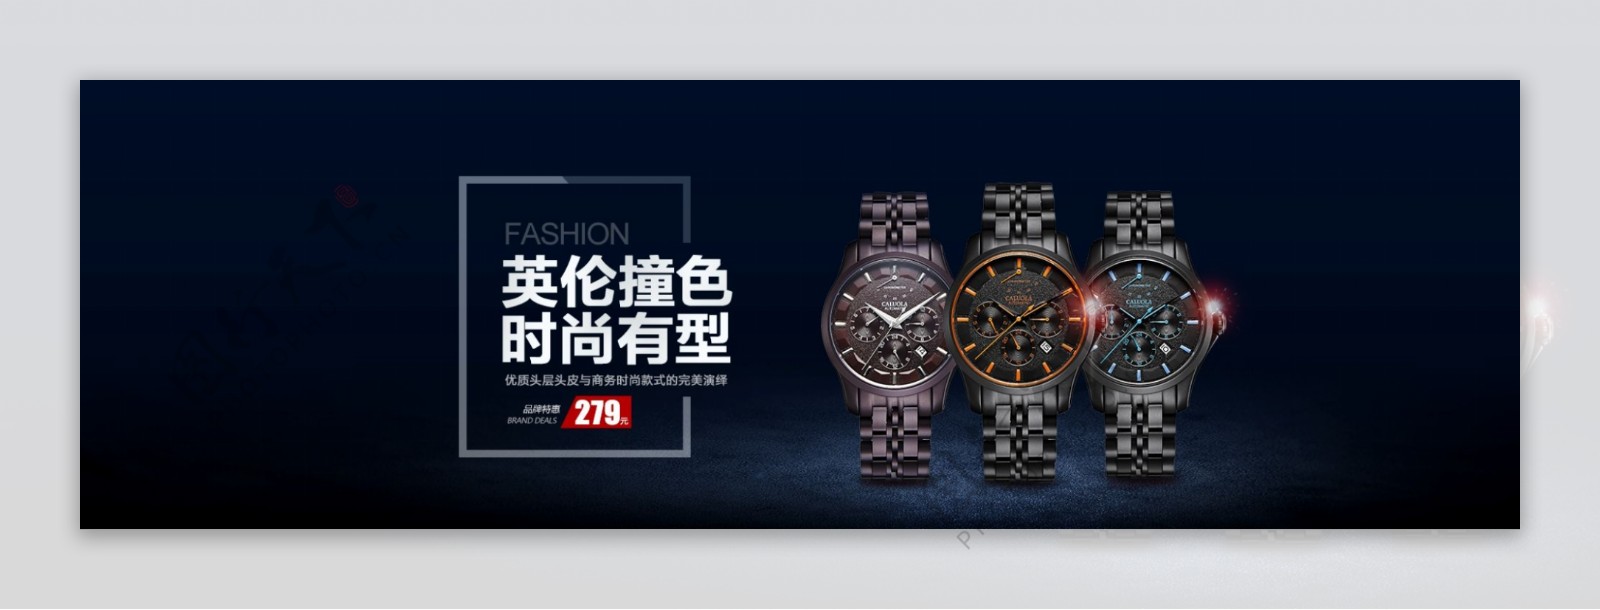 电商淘宝英伦撞色有型手表品牌特惠海报